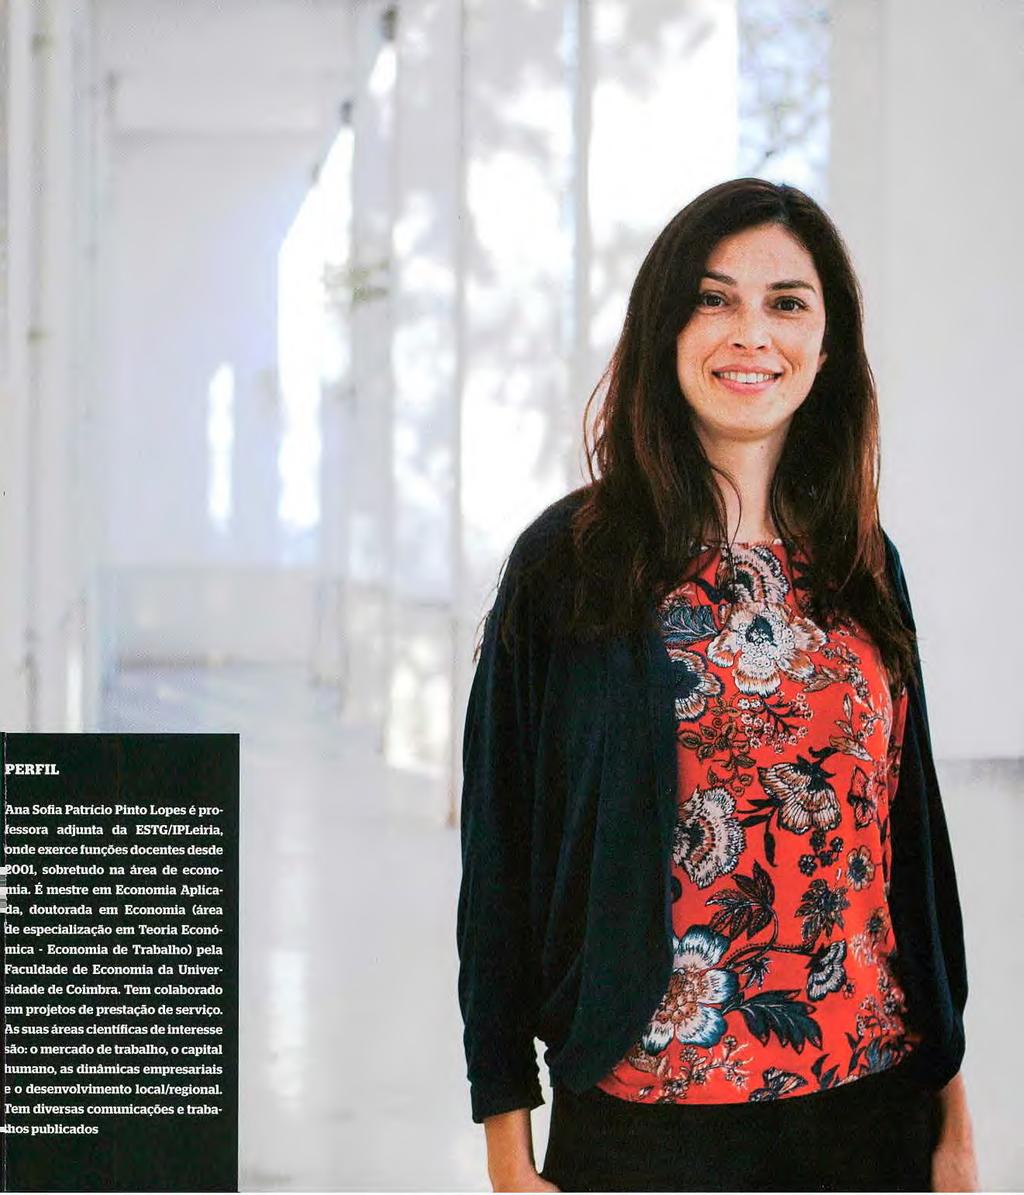 PERFIL Ana Sofia Patrício Pinto Lopes é professora adjunta da ESTG/WLeiria, onde exerce funções docentes desde `001, sobretudo na área de econo- 'a.